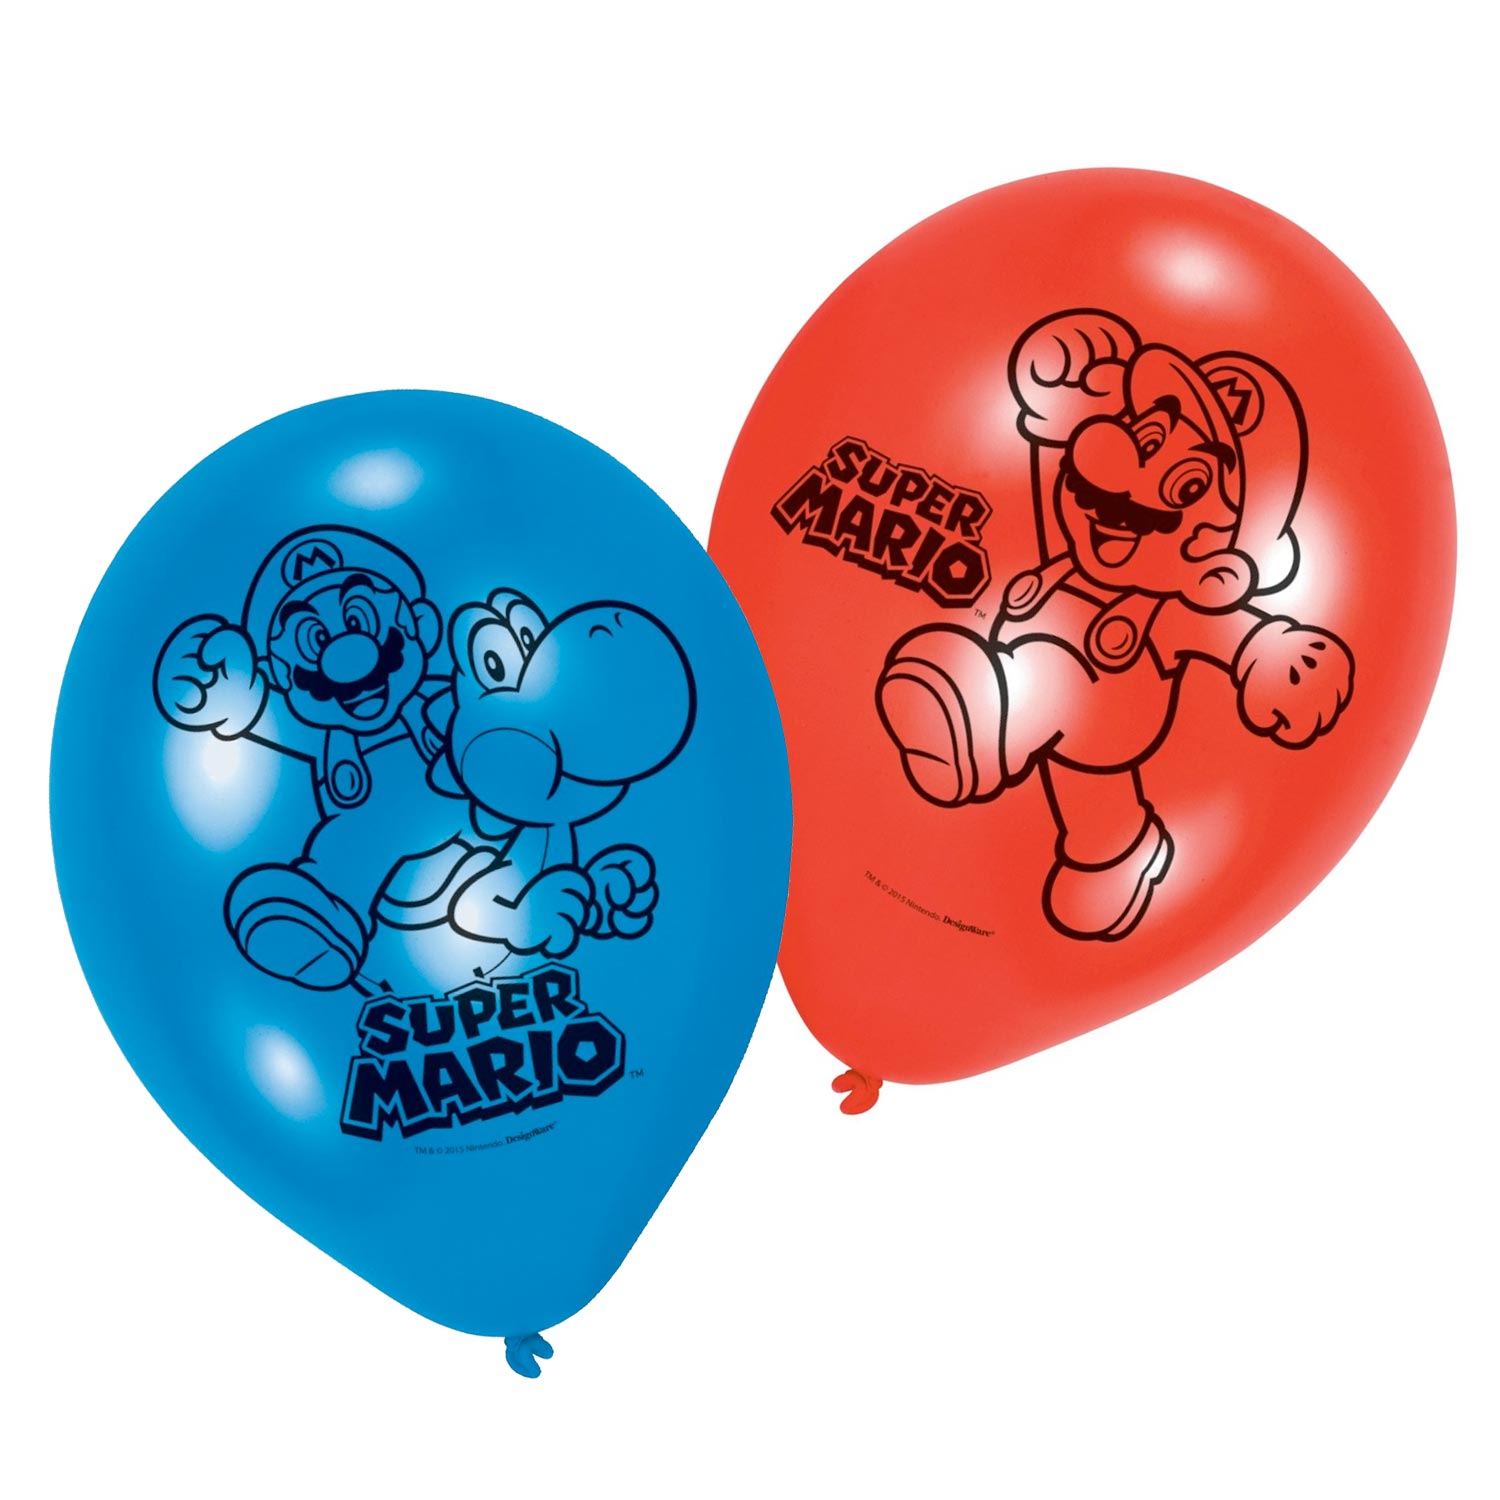 Super Mario Luftballons, 6 Stück.